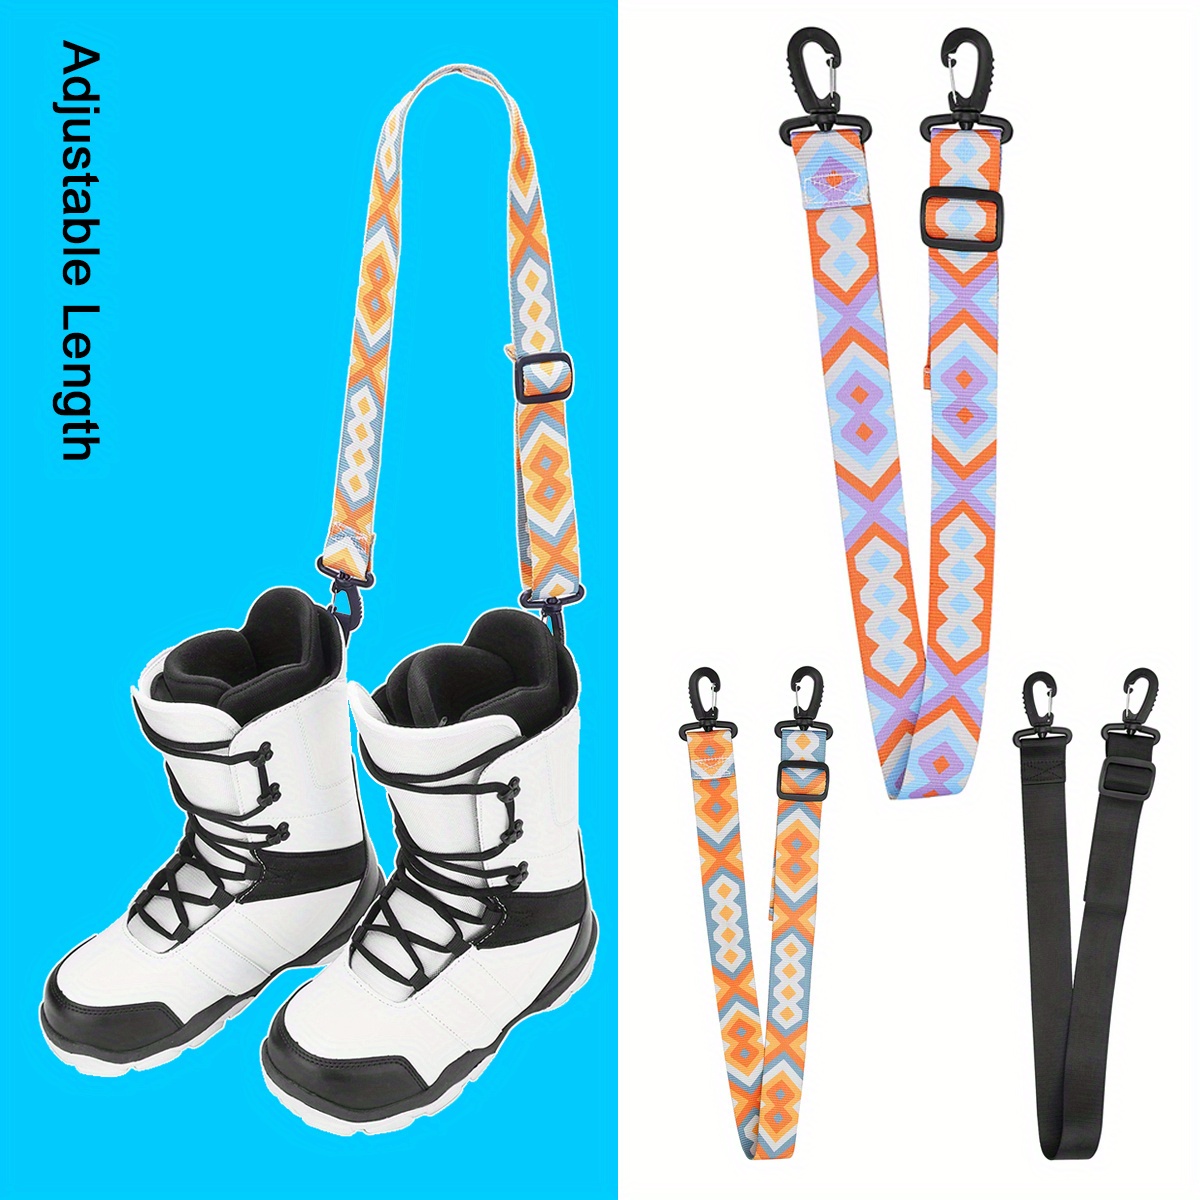 Sangle de transport de ski - Sangle de ski + Porte-chaussures de ski - Set  de ski